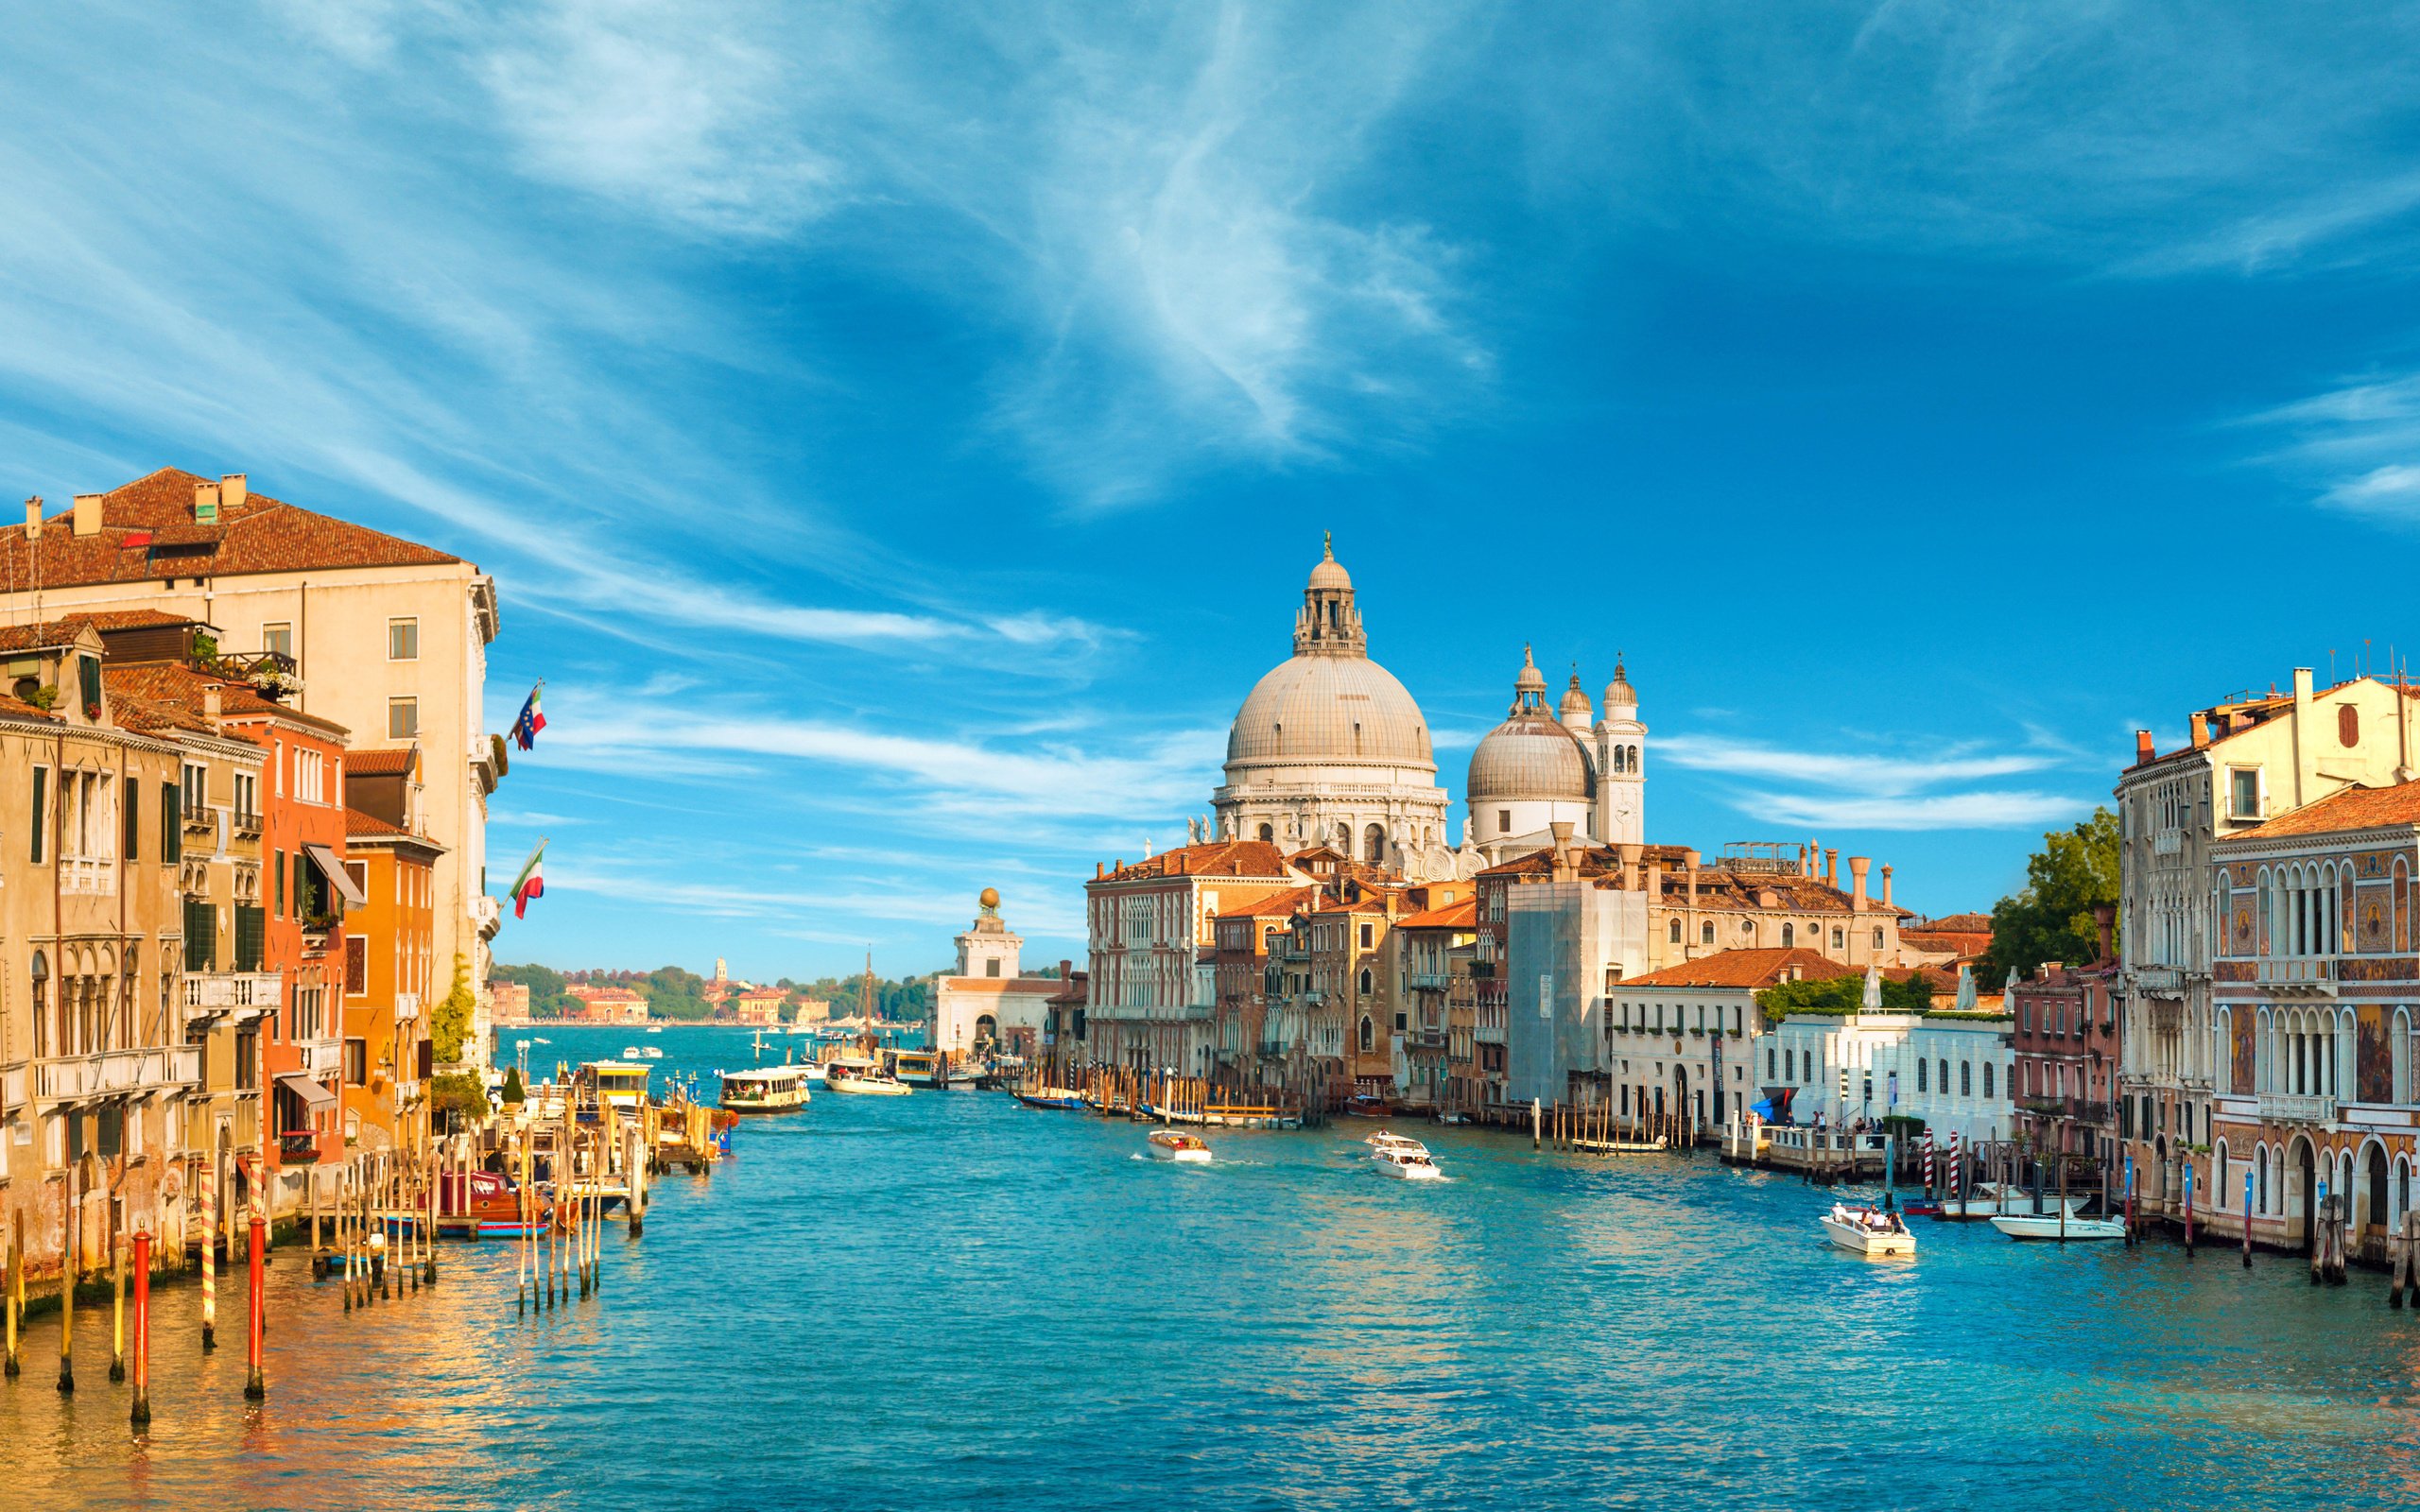 Venice Italia với hệ thống kênh rộng lớn và kiến trúc cổ kính là một trong những điểm đến hấp dẫn nhất của Ý. Hình ảnh tuyệt đẹp và sáng tạo sẽ giúp bạn khám phá được tất cả vẻ đẹp đầy sức sống của thành phố này.